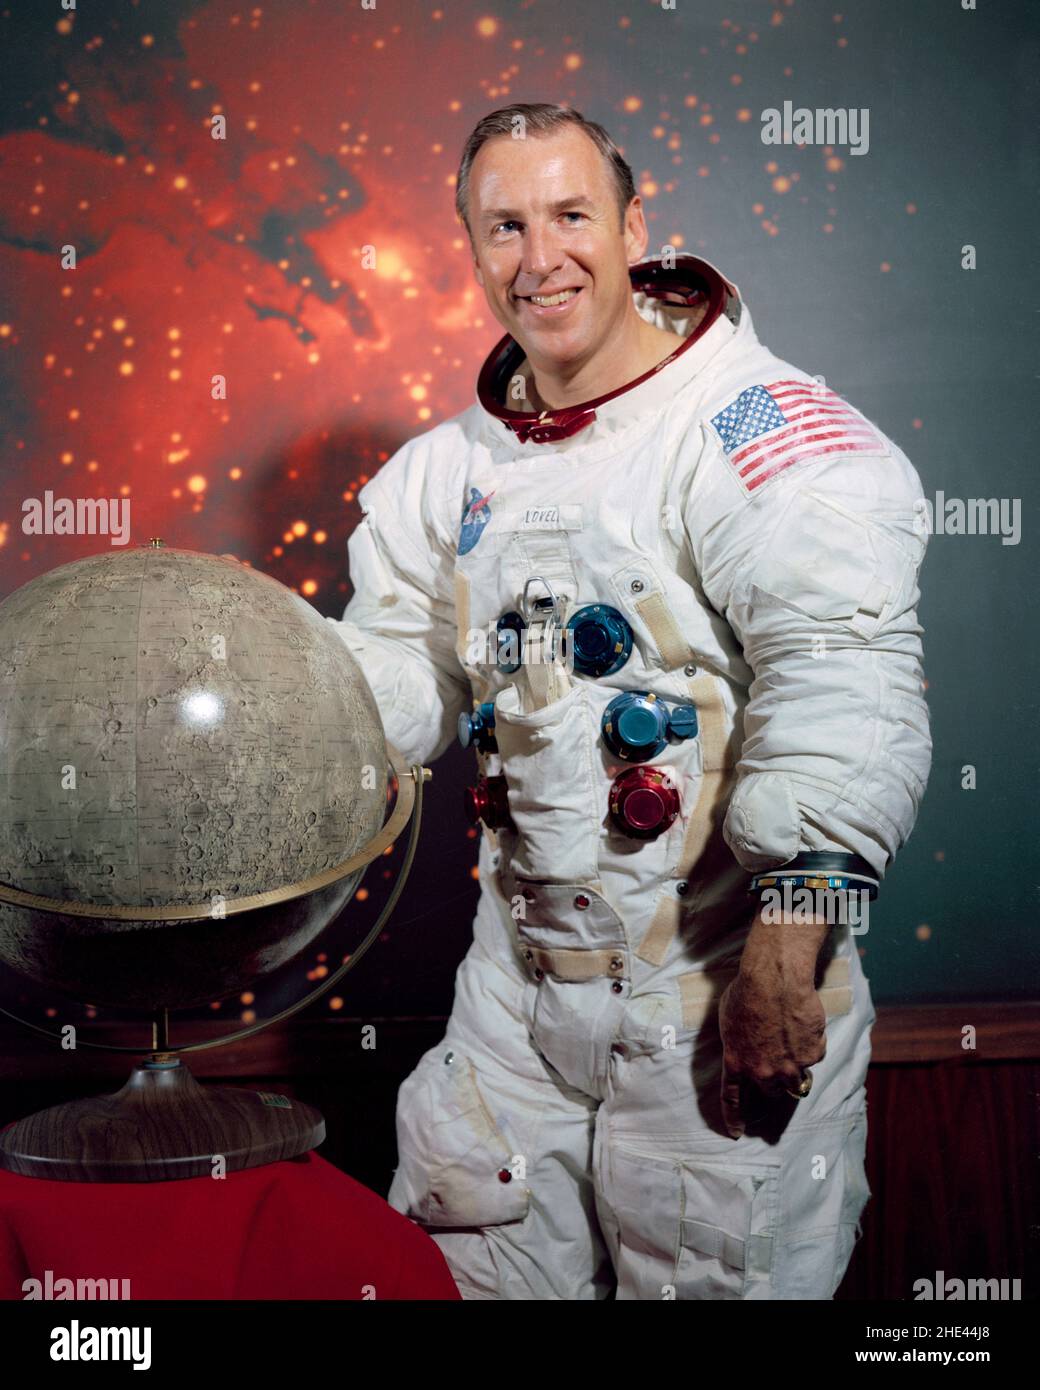 Retrato del astronauta James A. Lovell, Jr. En su traje espacial junto a un modelo de la Luna. Jim Lovell James Arthur Lovell Jr. (N. 25 de marzo de 1928). En 1968, como piloto del módulo de mando de Apolo 8, uno de los tres primeros astronautas en volar y orbitar a la Luna. Entonces comandó la misión lunar del Apolo 13 en 1970 que, después de un fracaso crítico en ruta, rodeó la Luna y regresó a la Tierra con seguridad. Foto de stock